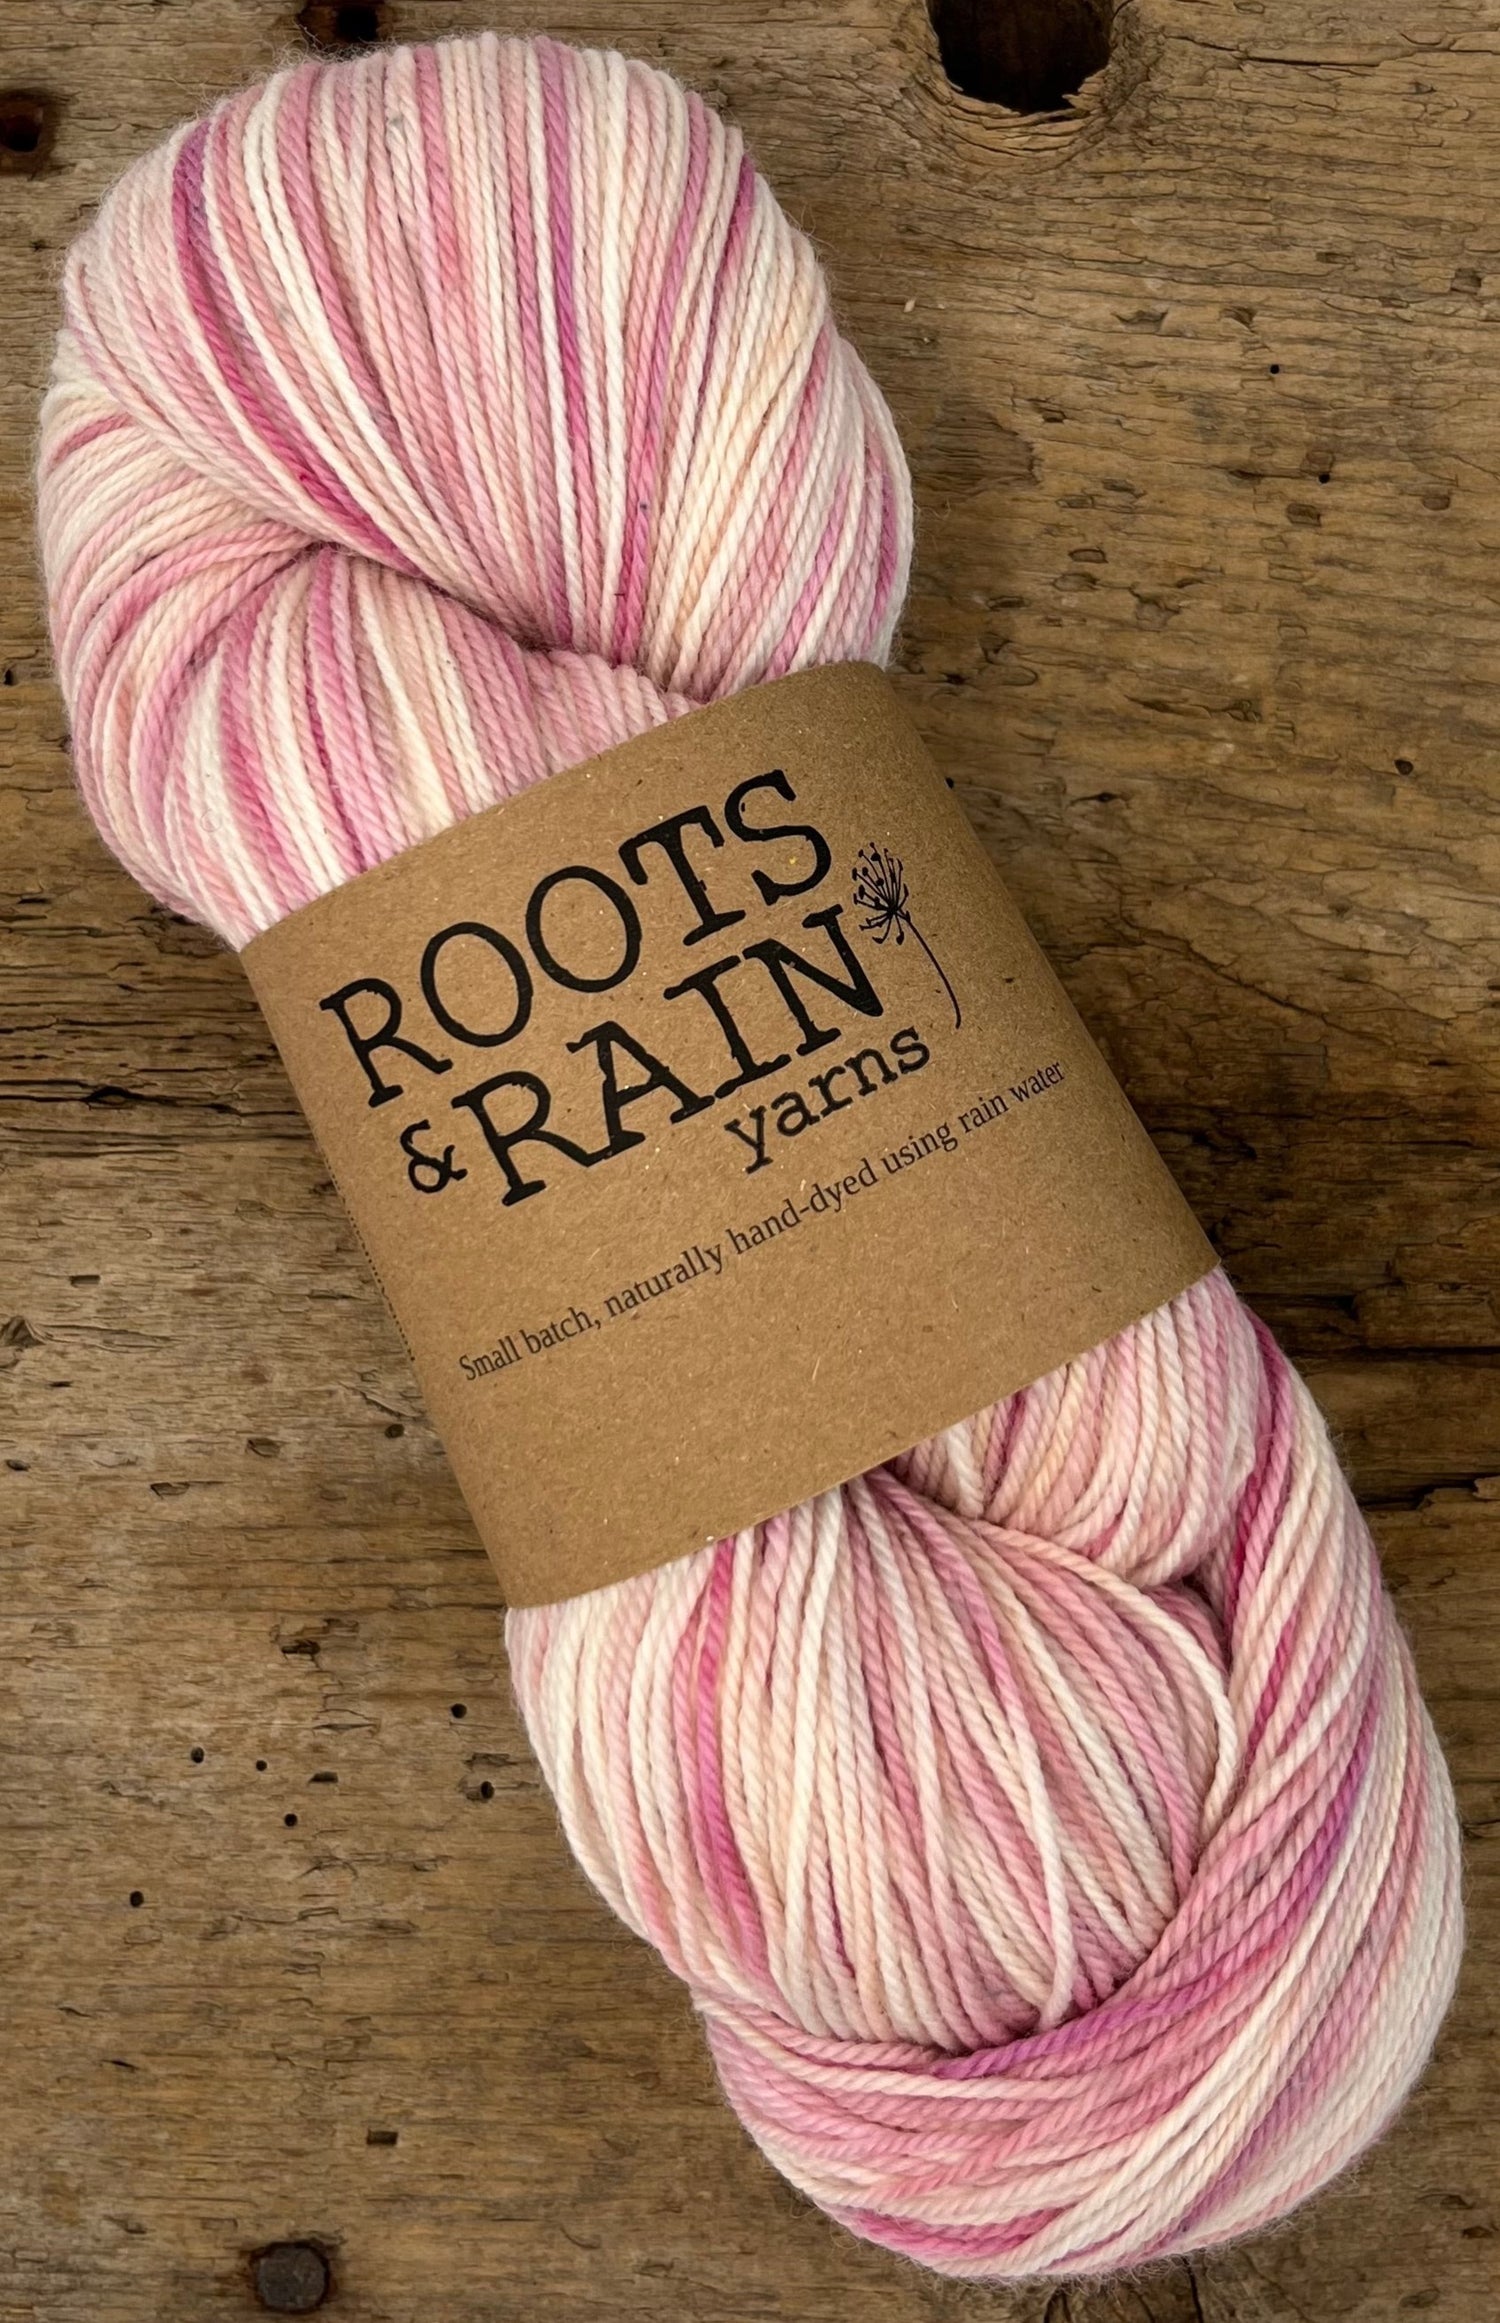 Roots & Rain Yarns – Roots & Rain Yarns